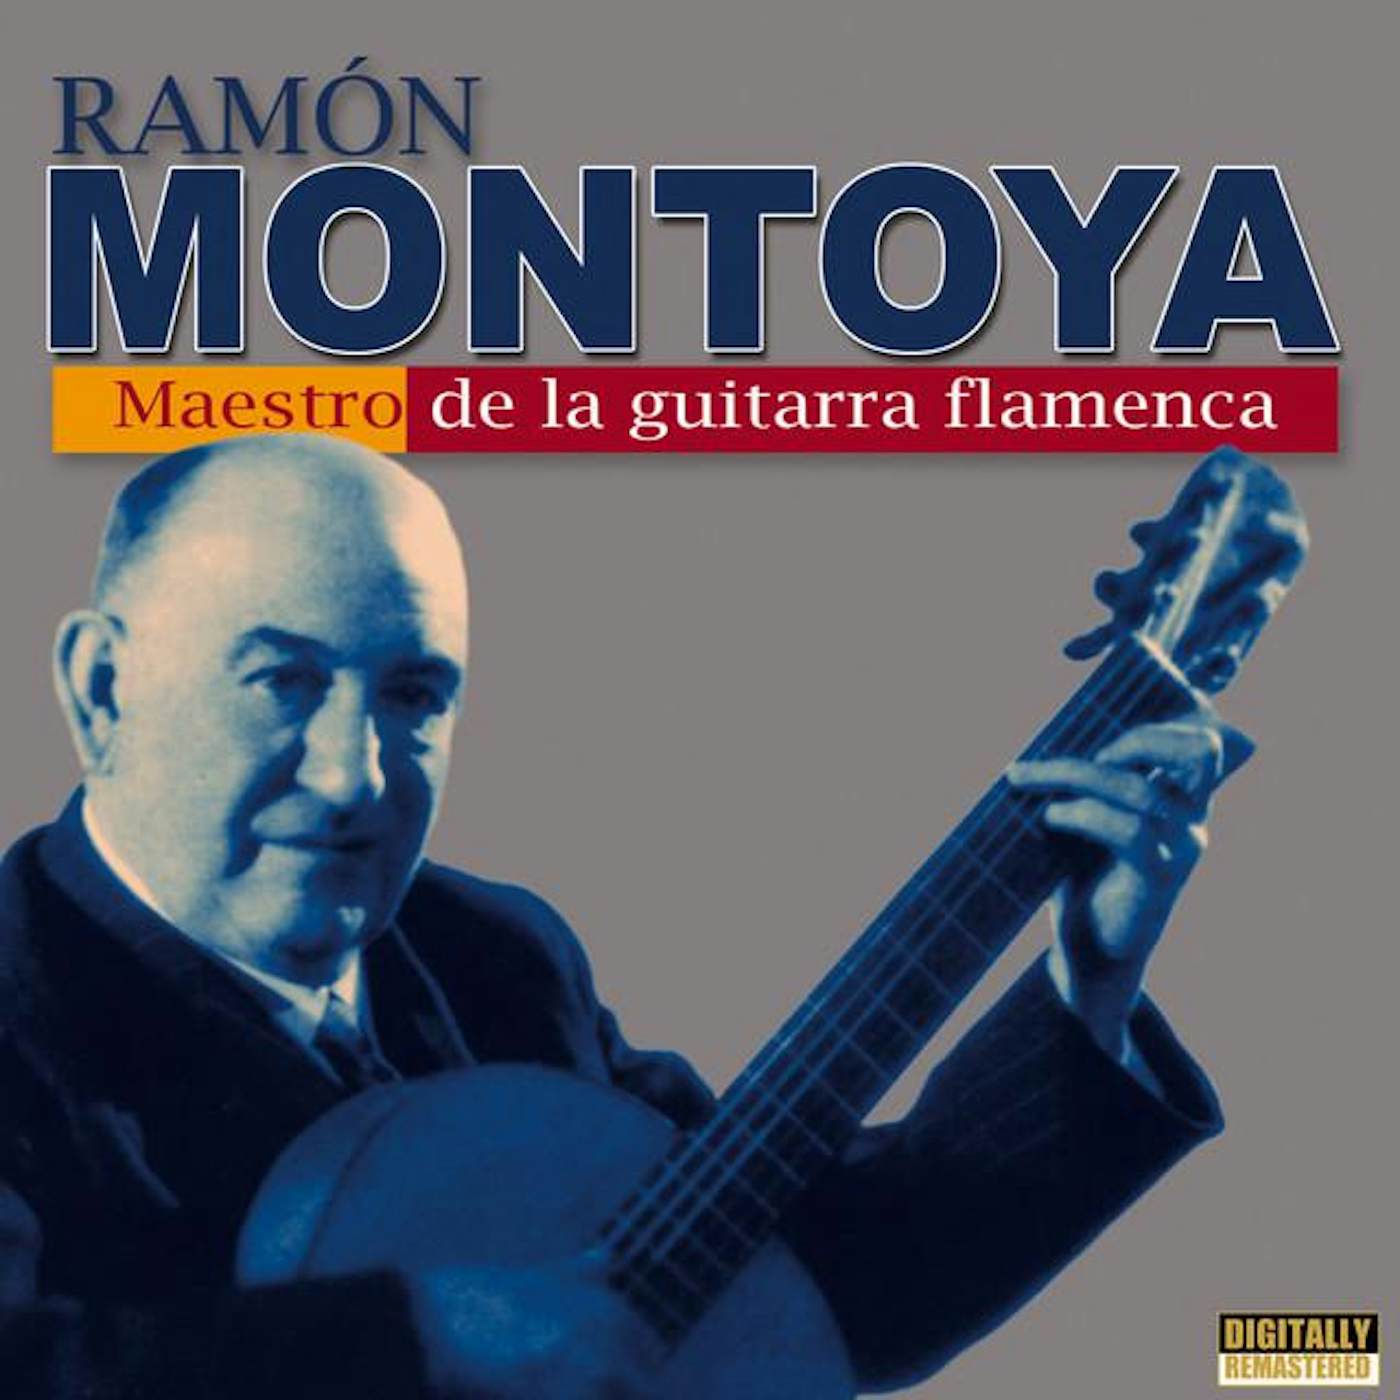 Ramon Montoya